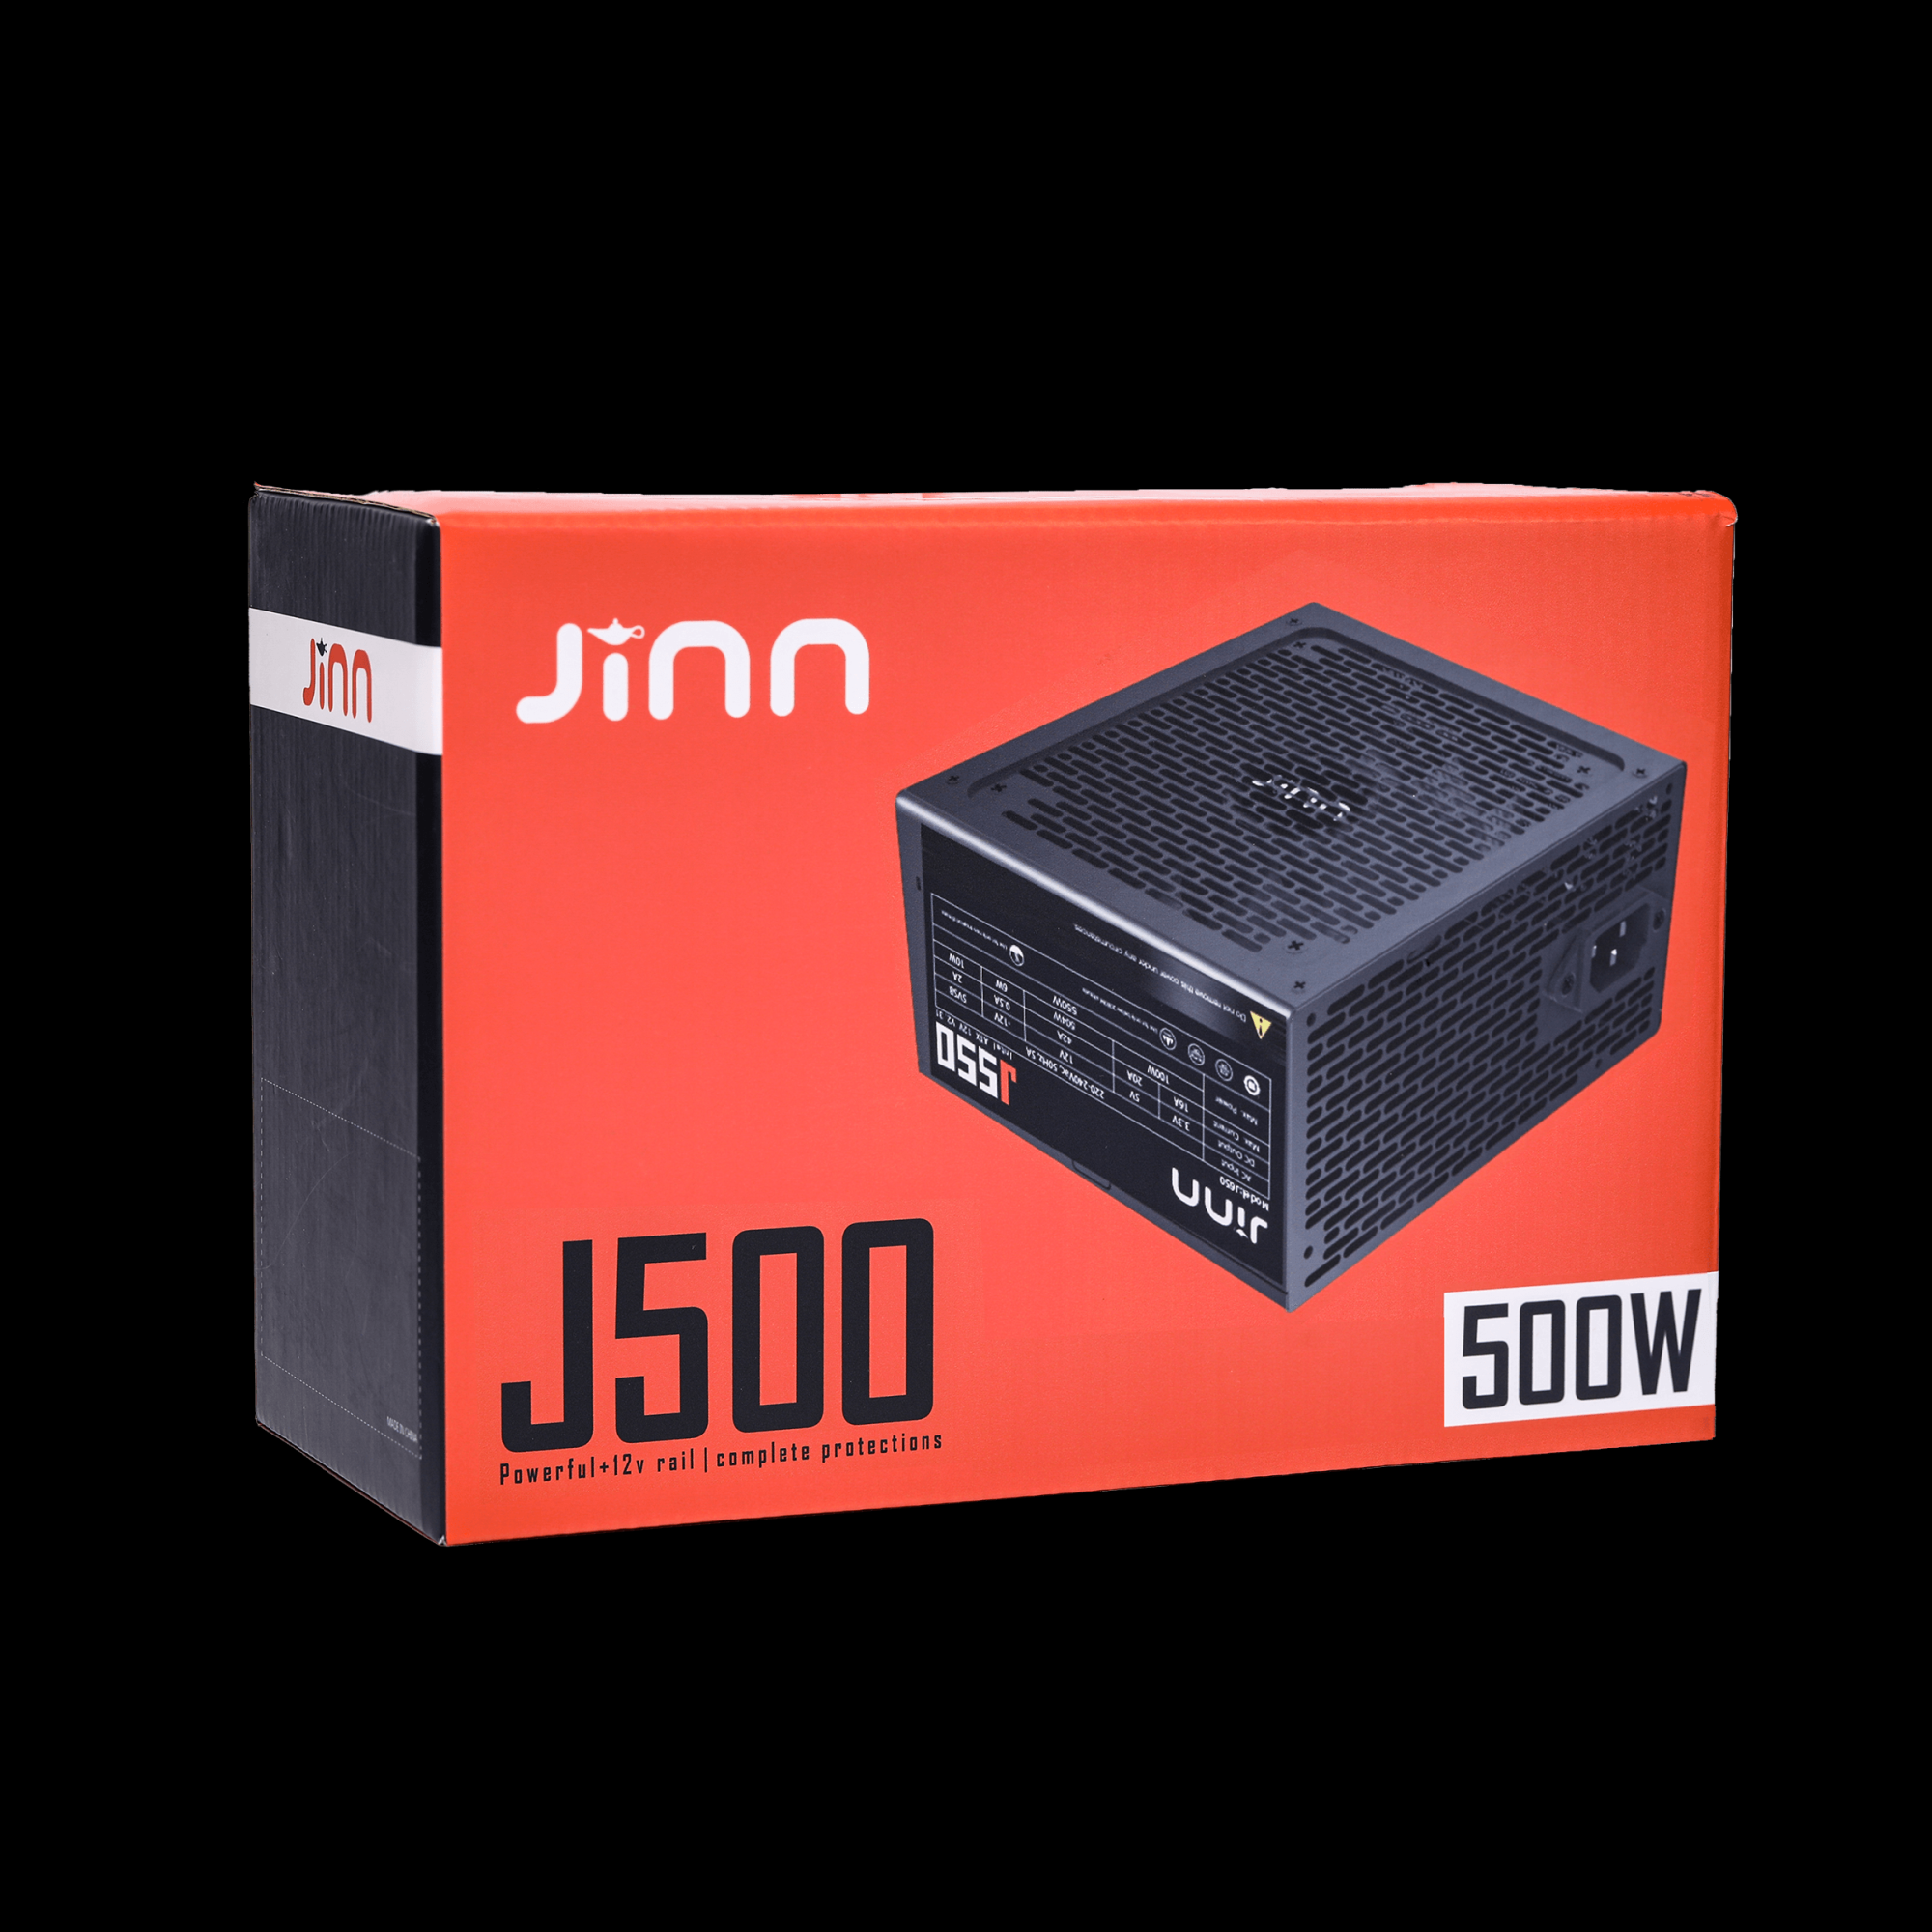 Nguồn Jinn J550 550W ATX